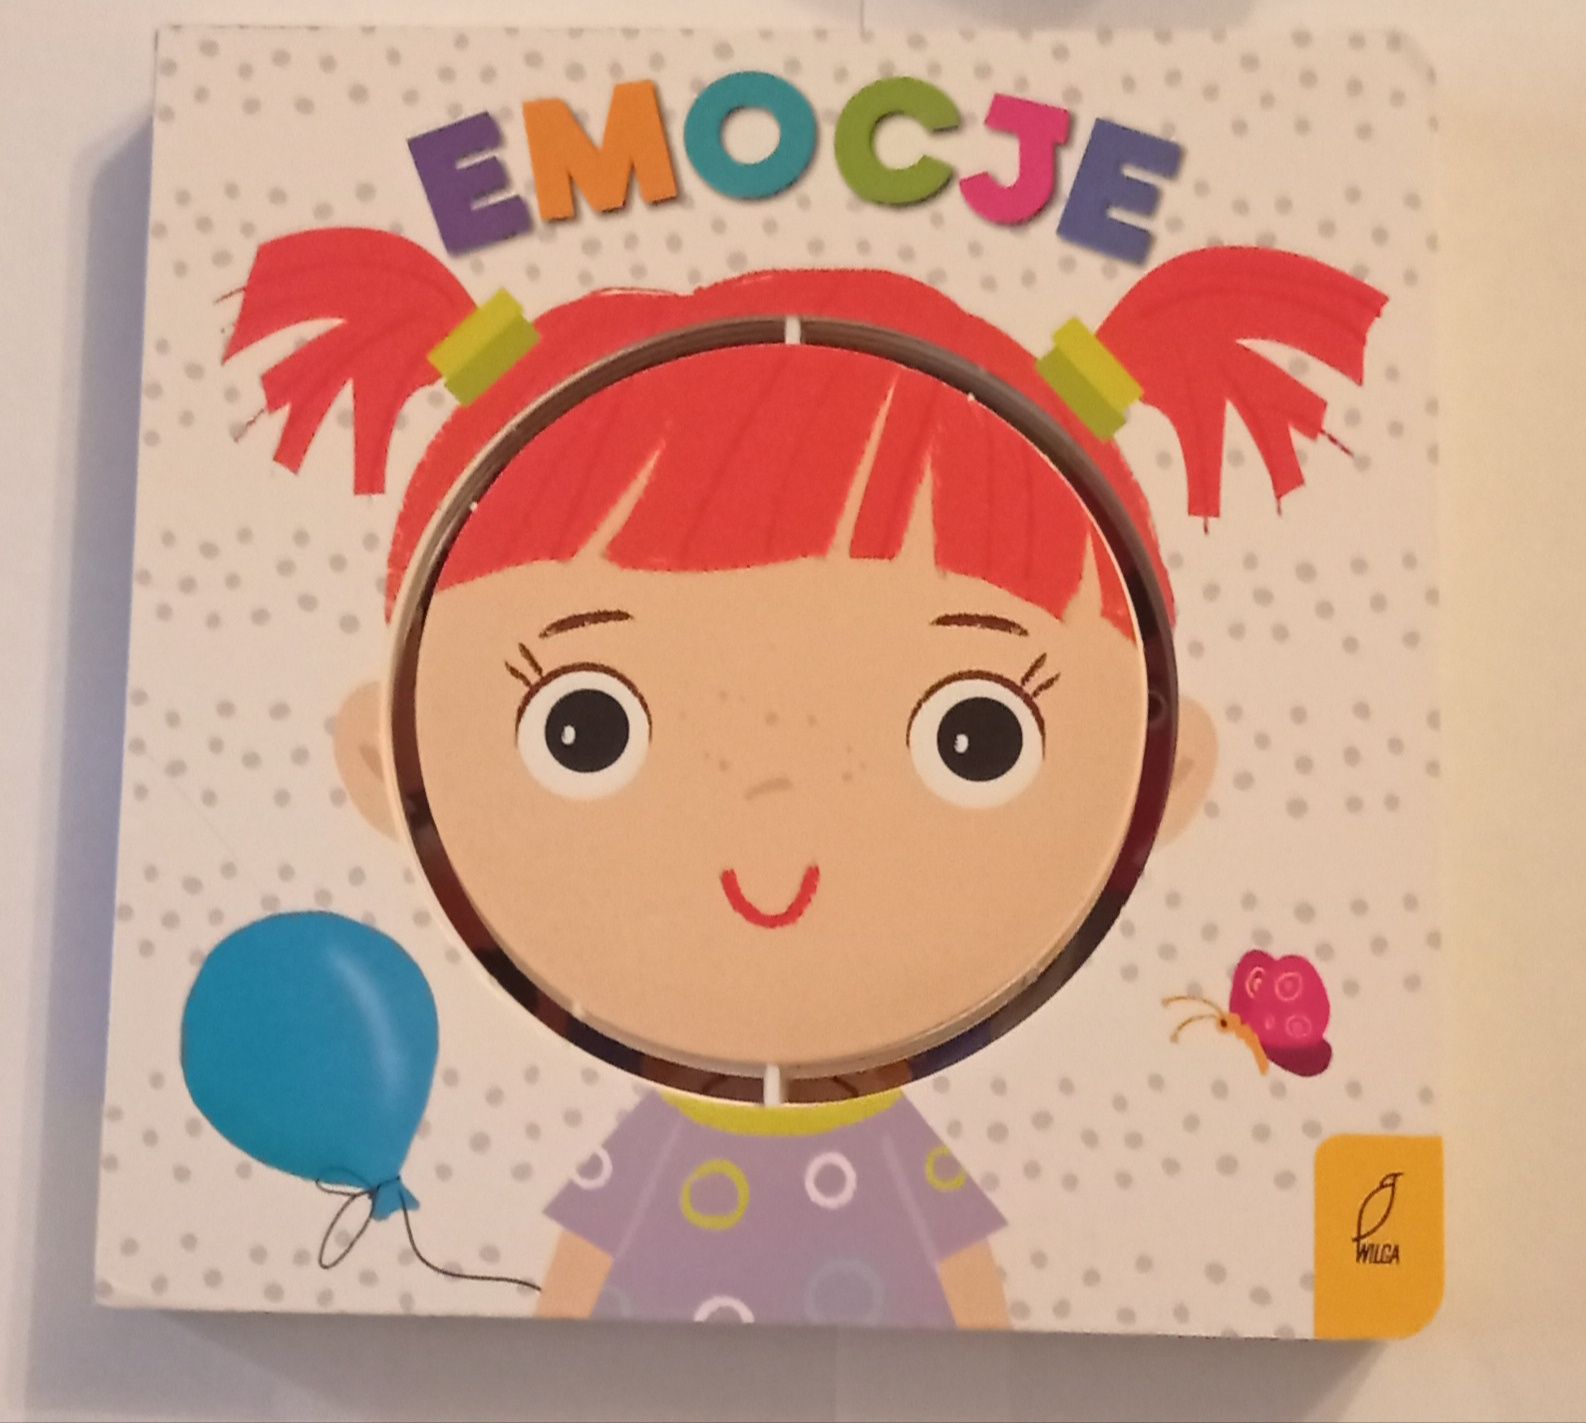 Emocje, książeczka-obracanka, dla dzieci powyżej 3 lat